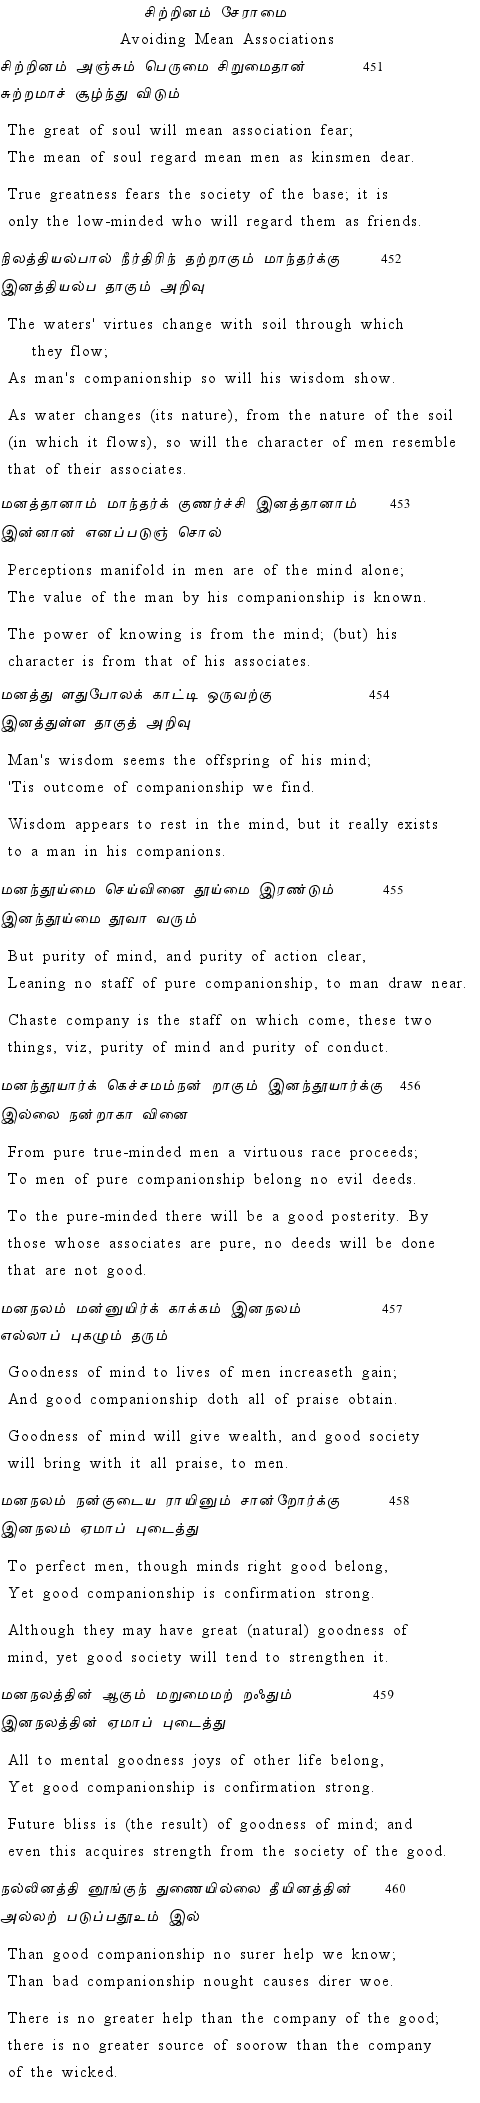 Text of Adhikaram 46